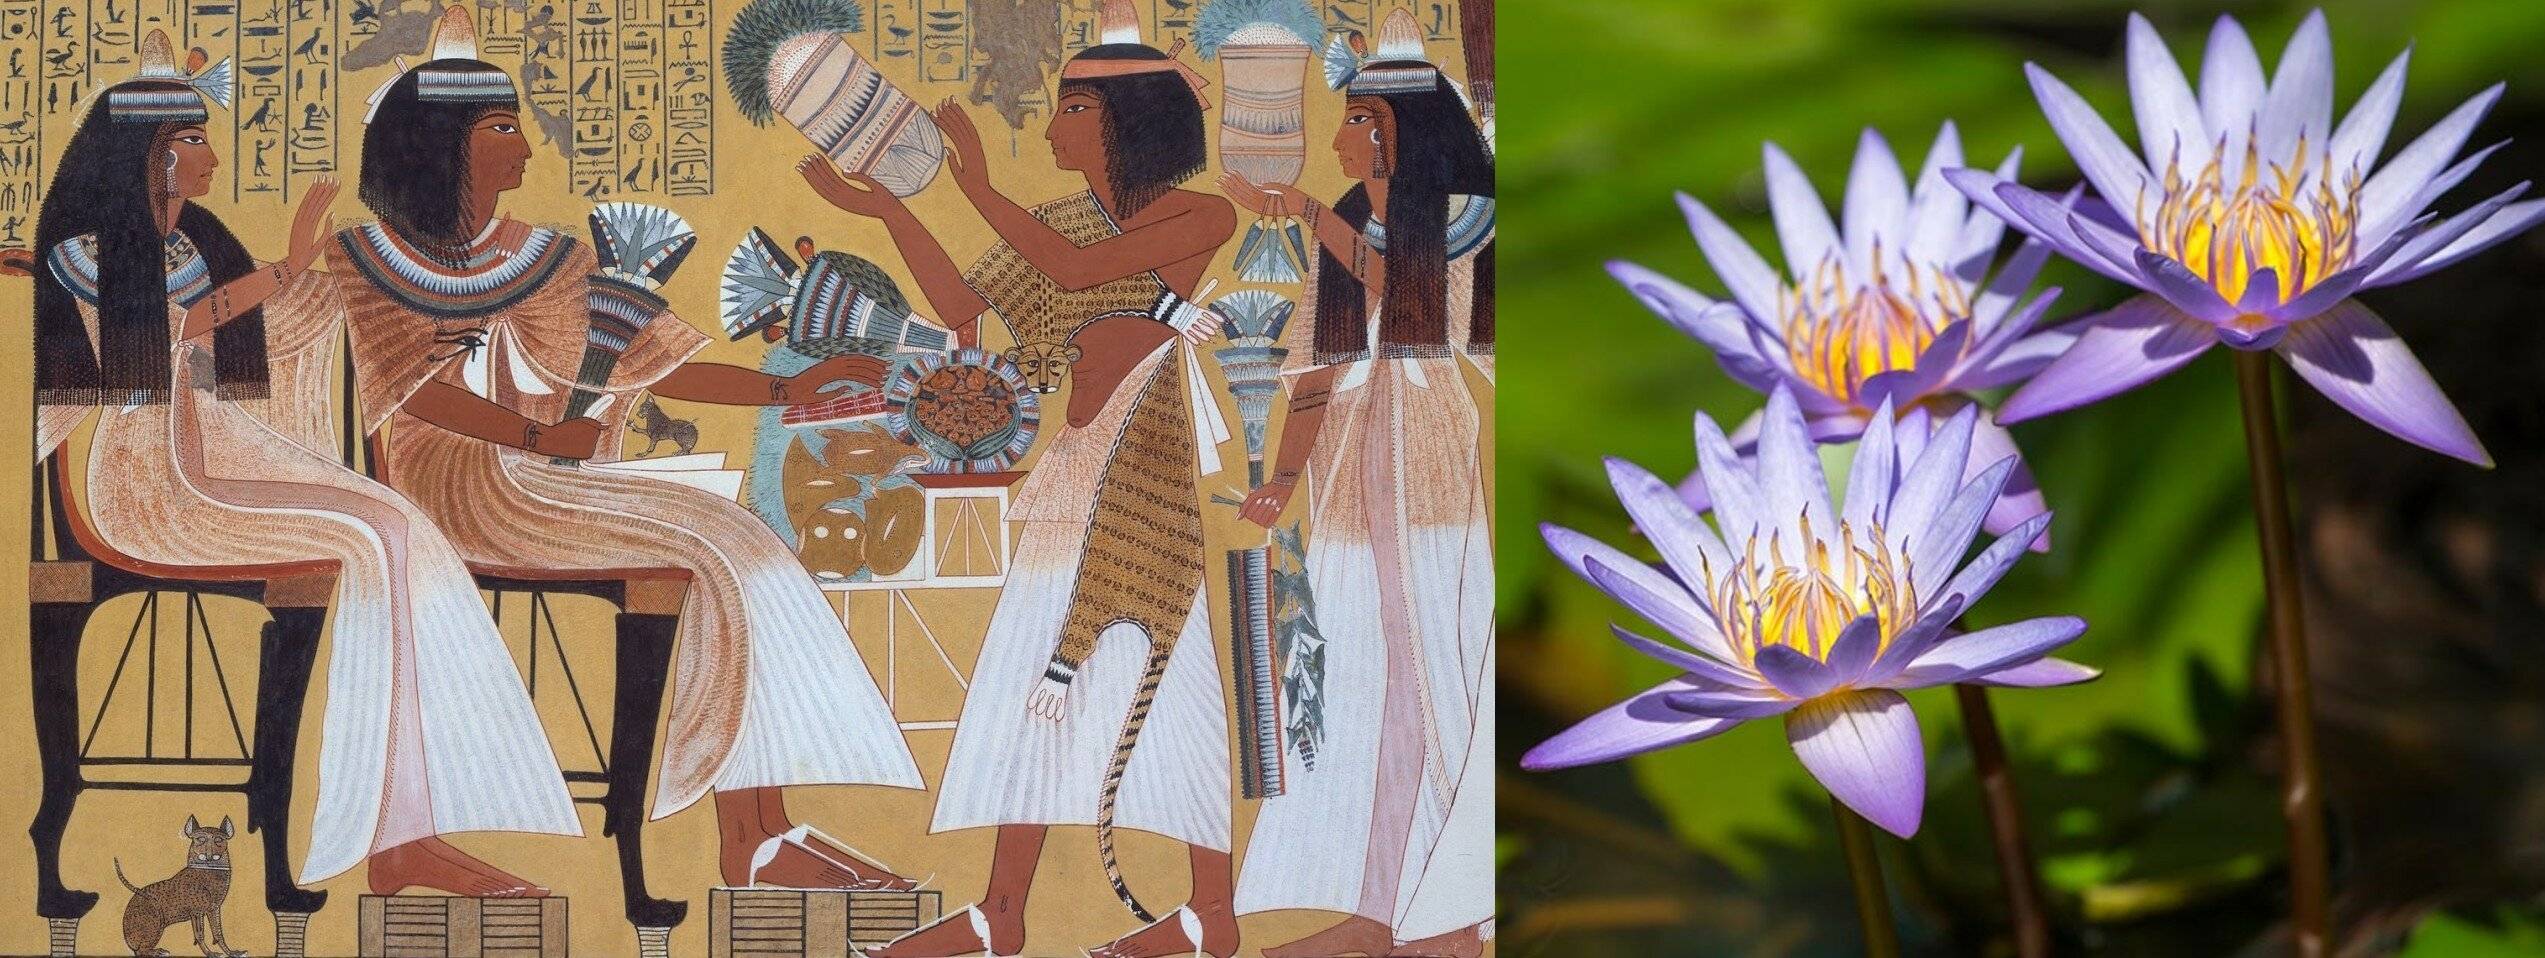 Cекреты красоты и гигиены древнего египта, которыми пользуется люди в современном мире